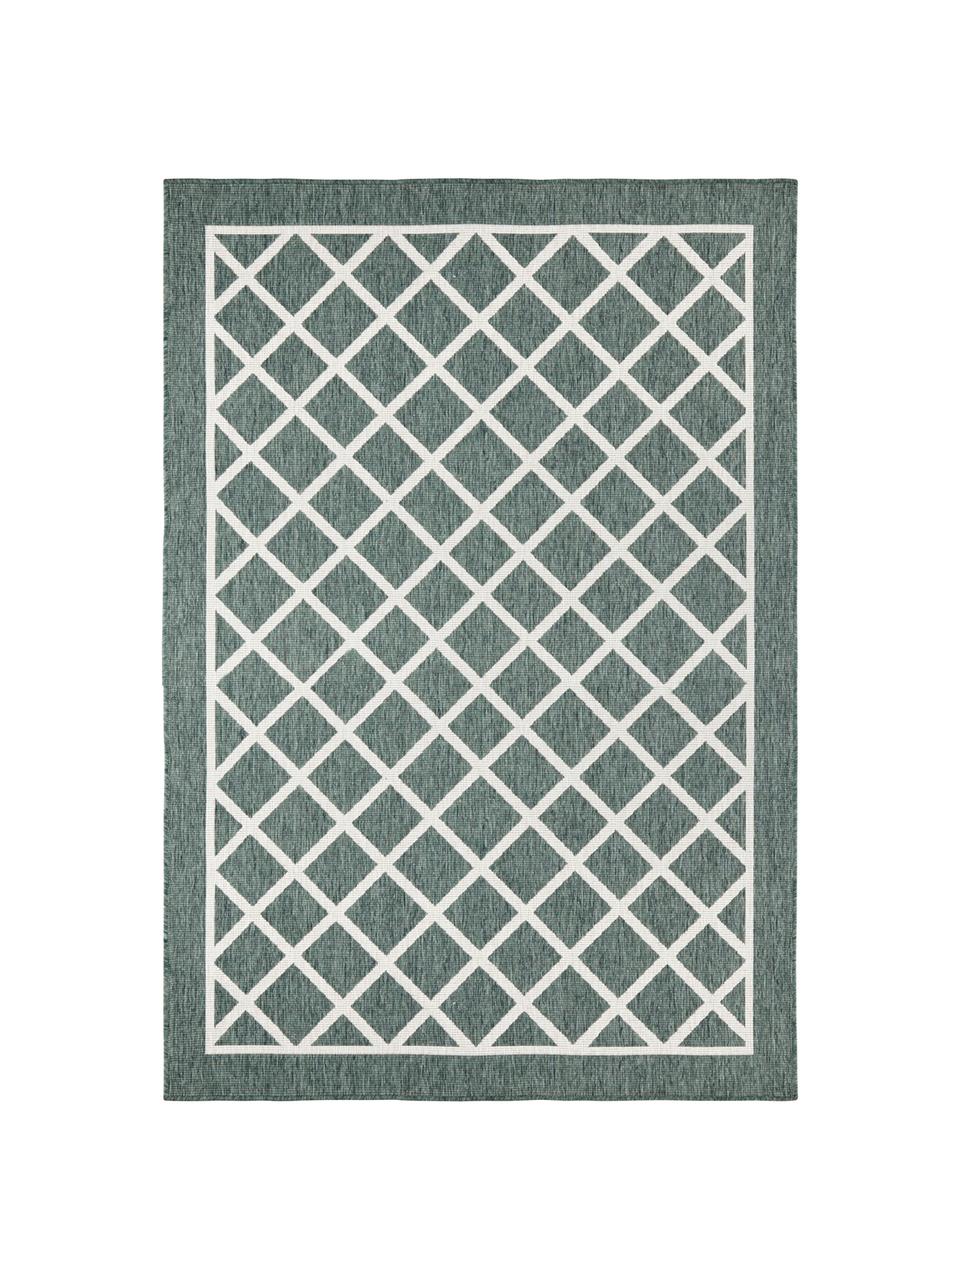 Obojstranný koberec do interiéru/exteriéru s diamantovým vzorom Sydney, Zelená, krémová